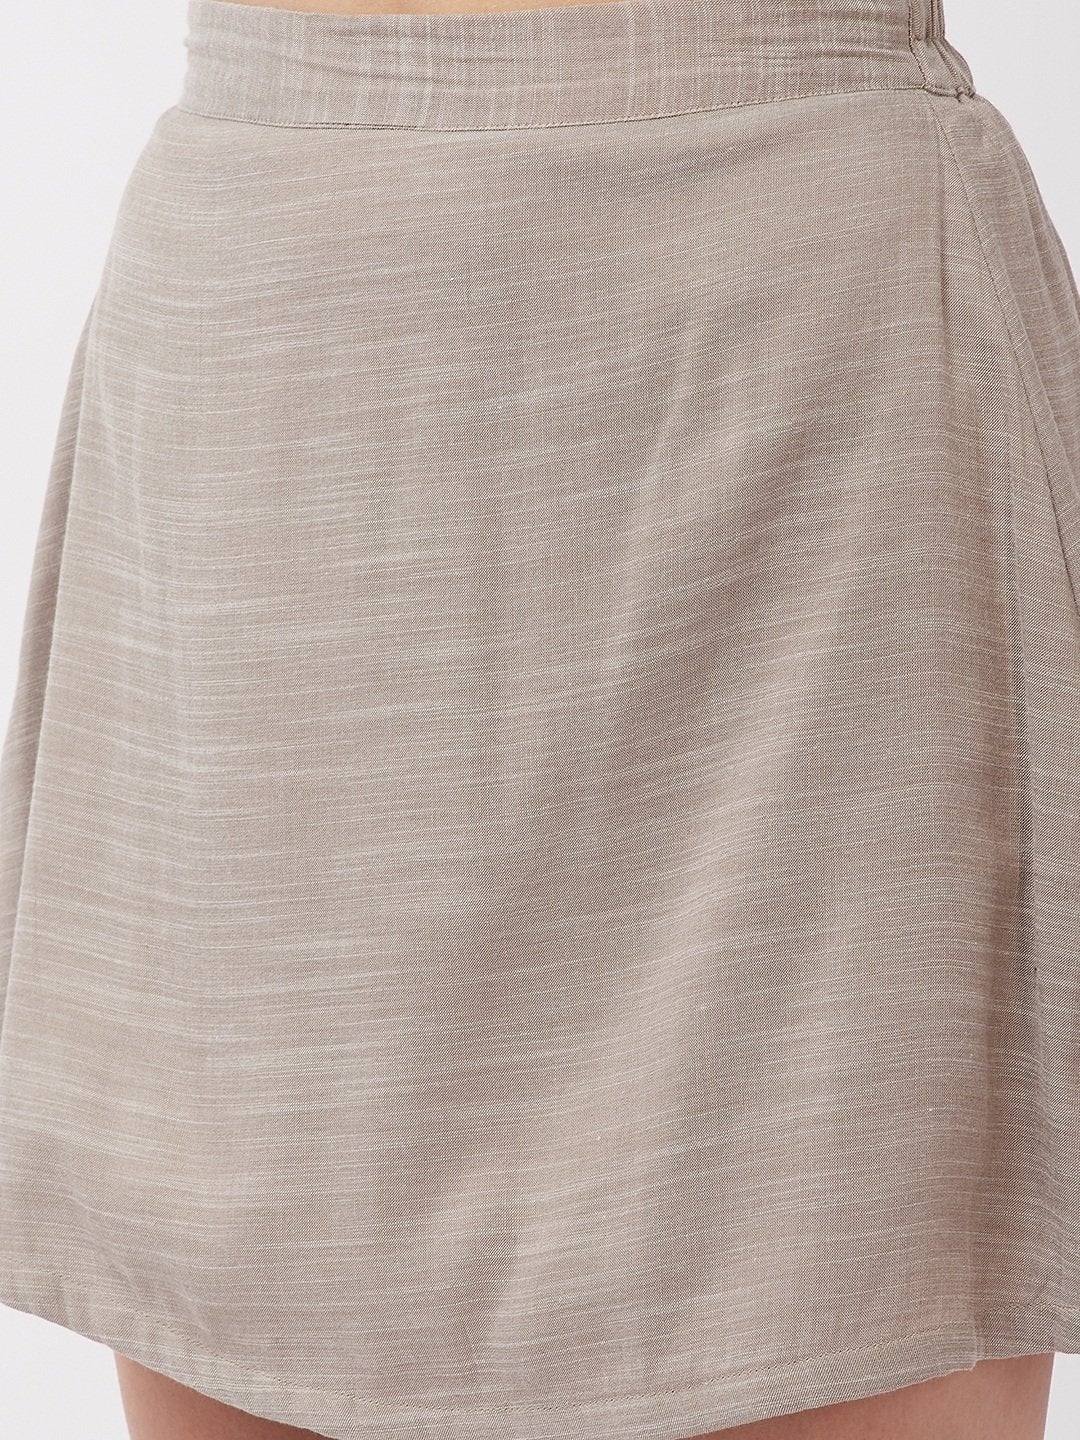 Women's Mushroom Gray Short Skirt - InWeave